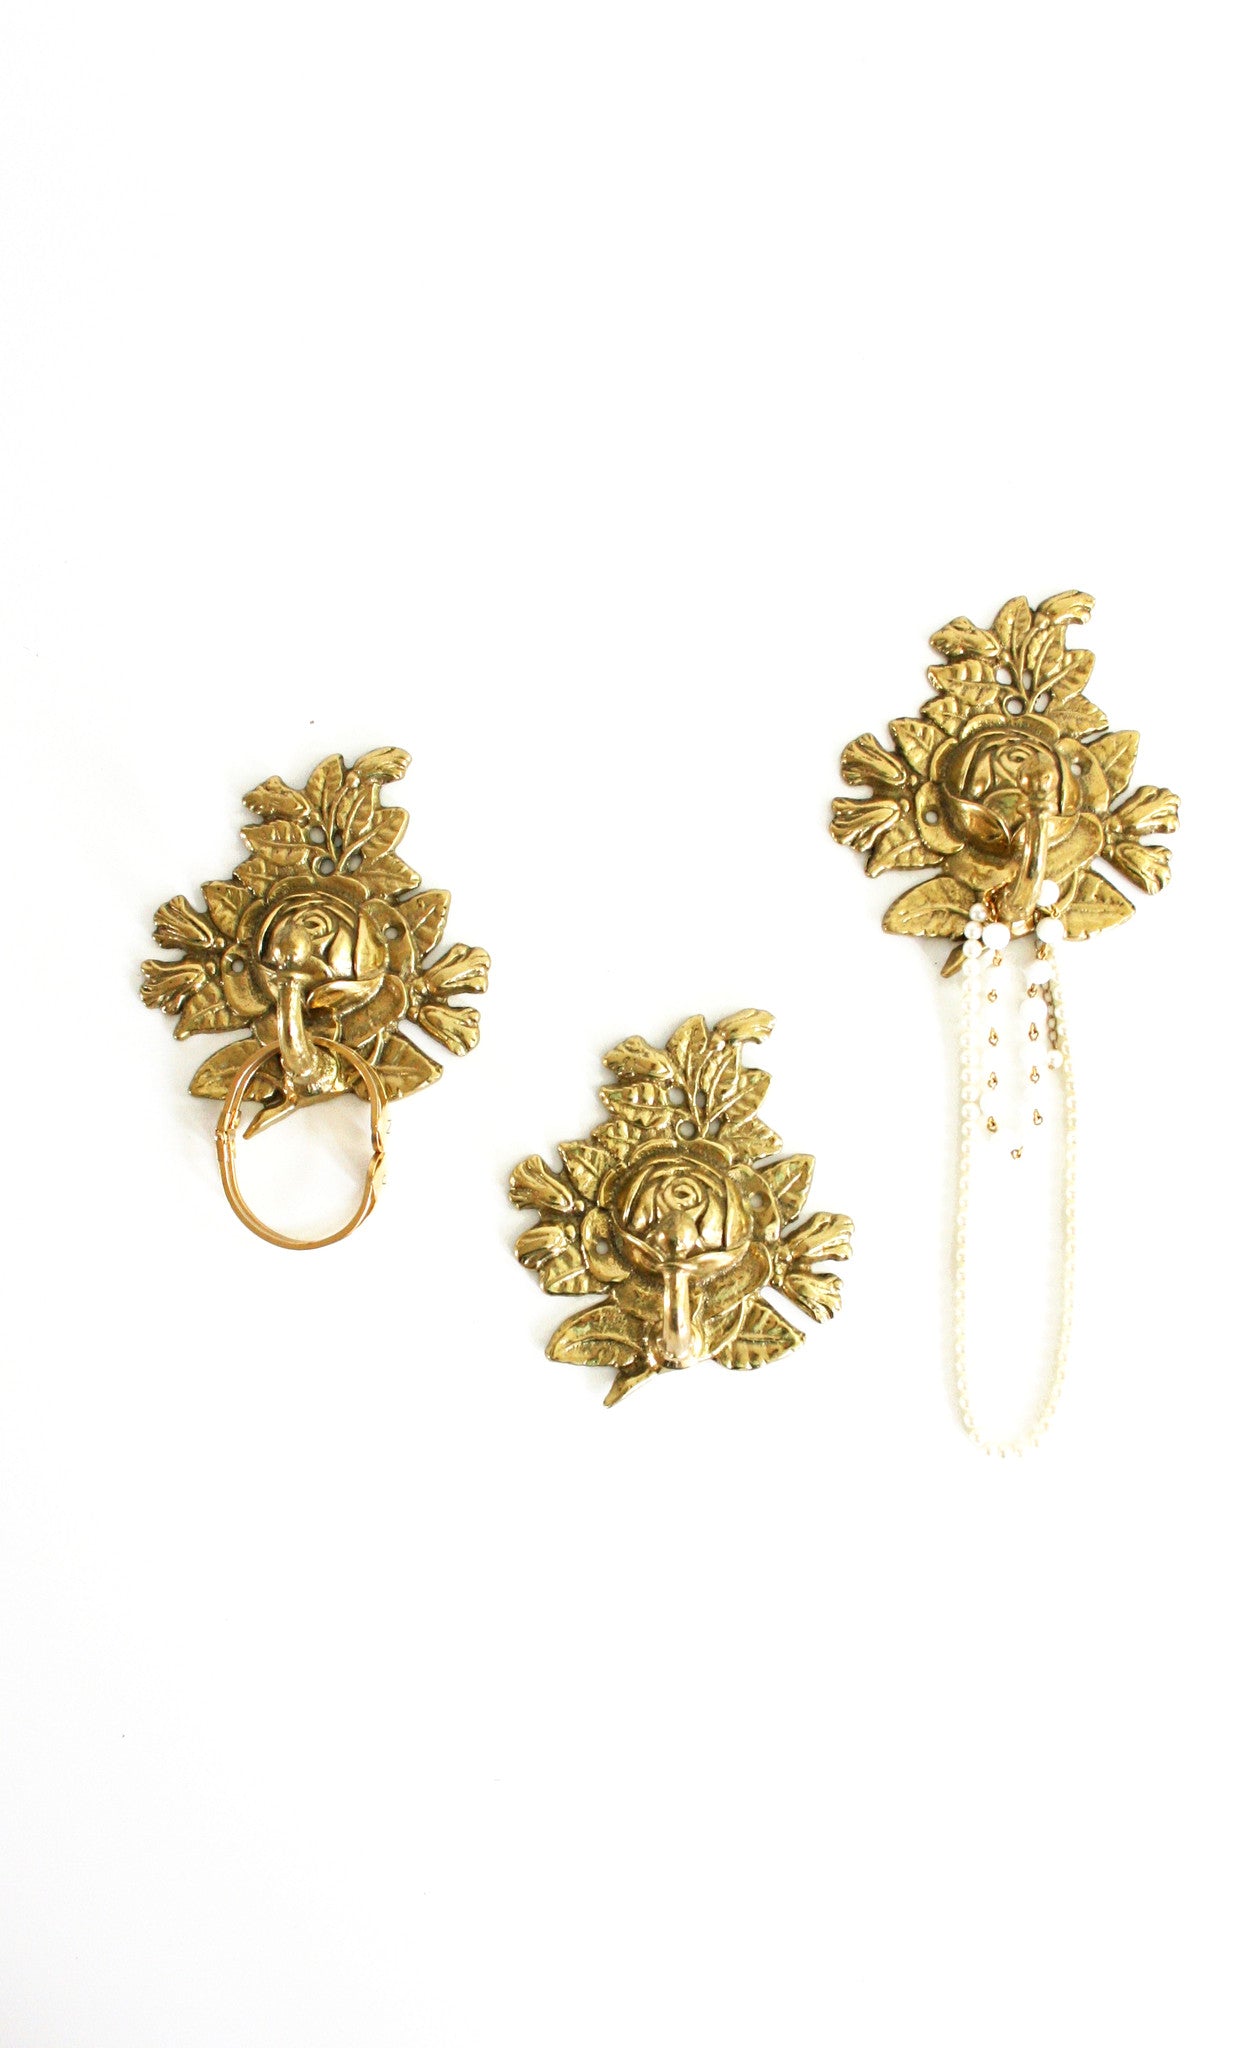 SOLD - Vintage Golden Brass Rose Flower Wall Hooks / Hollywood Regency Rose Hooks